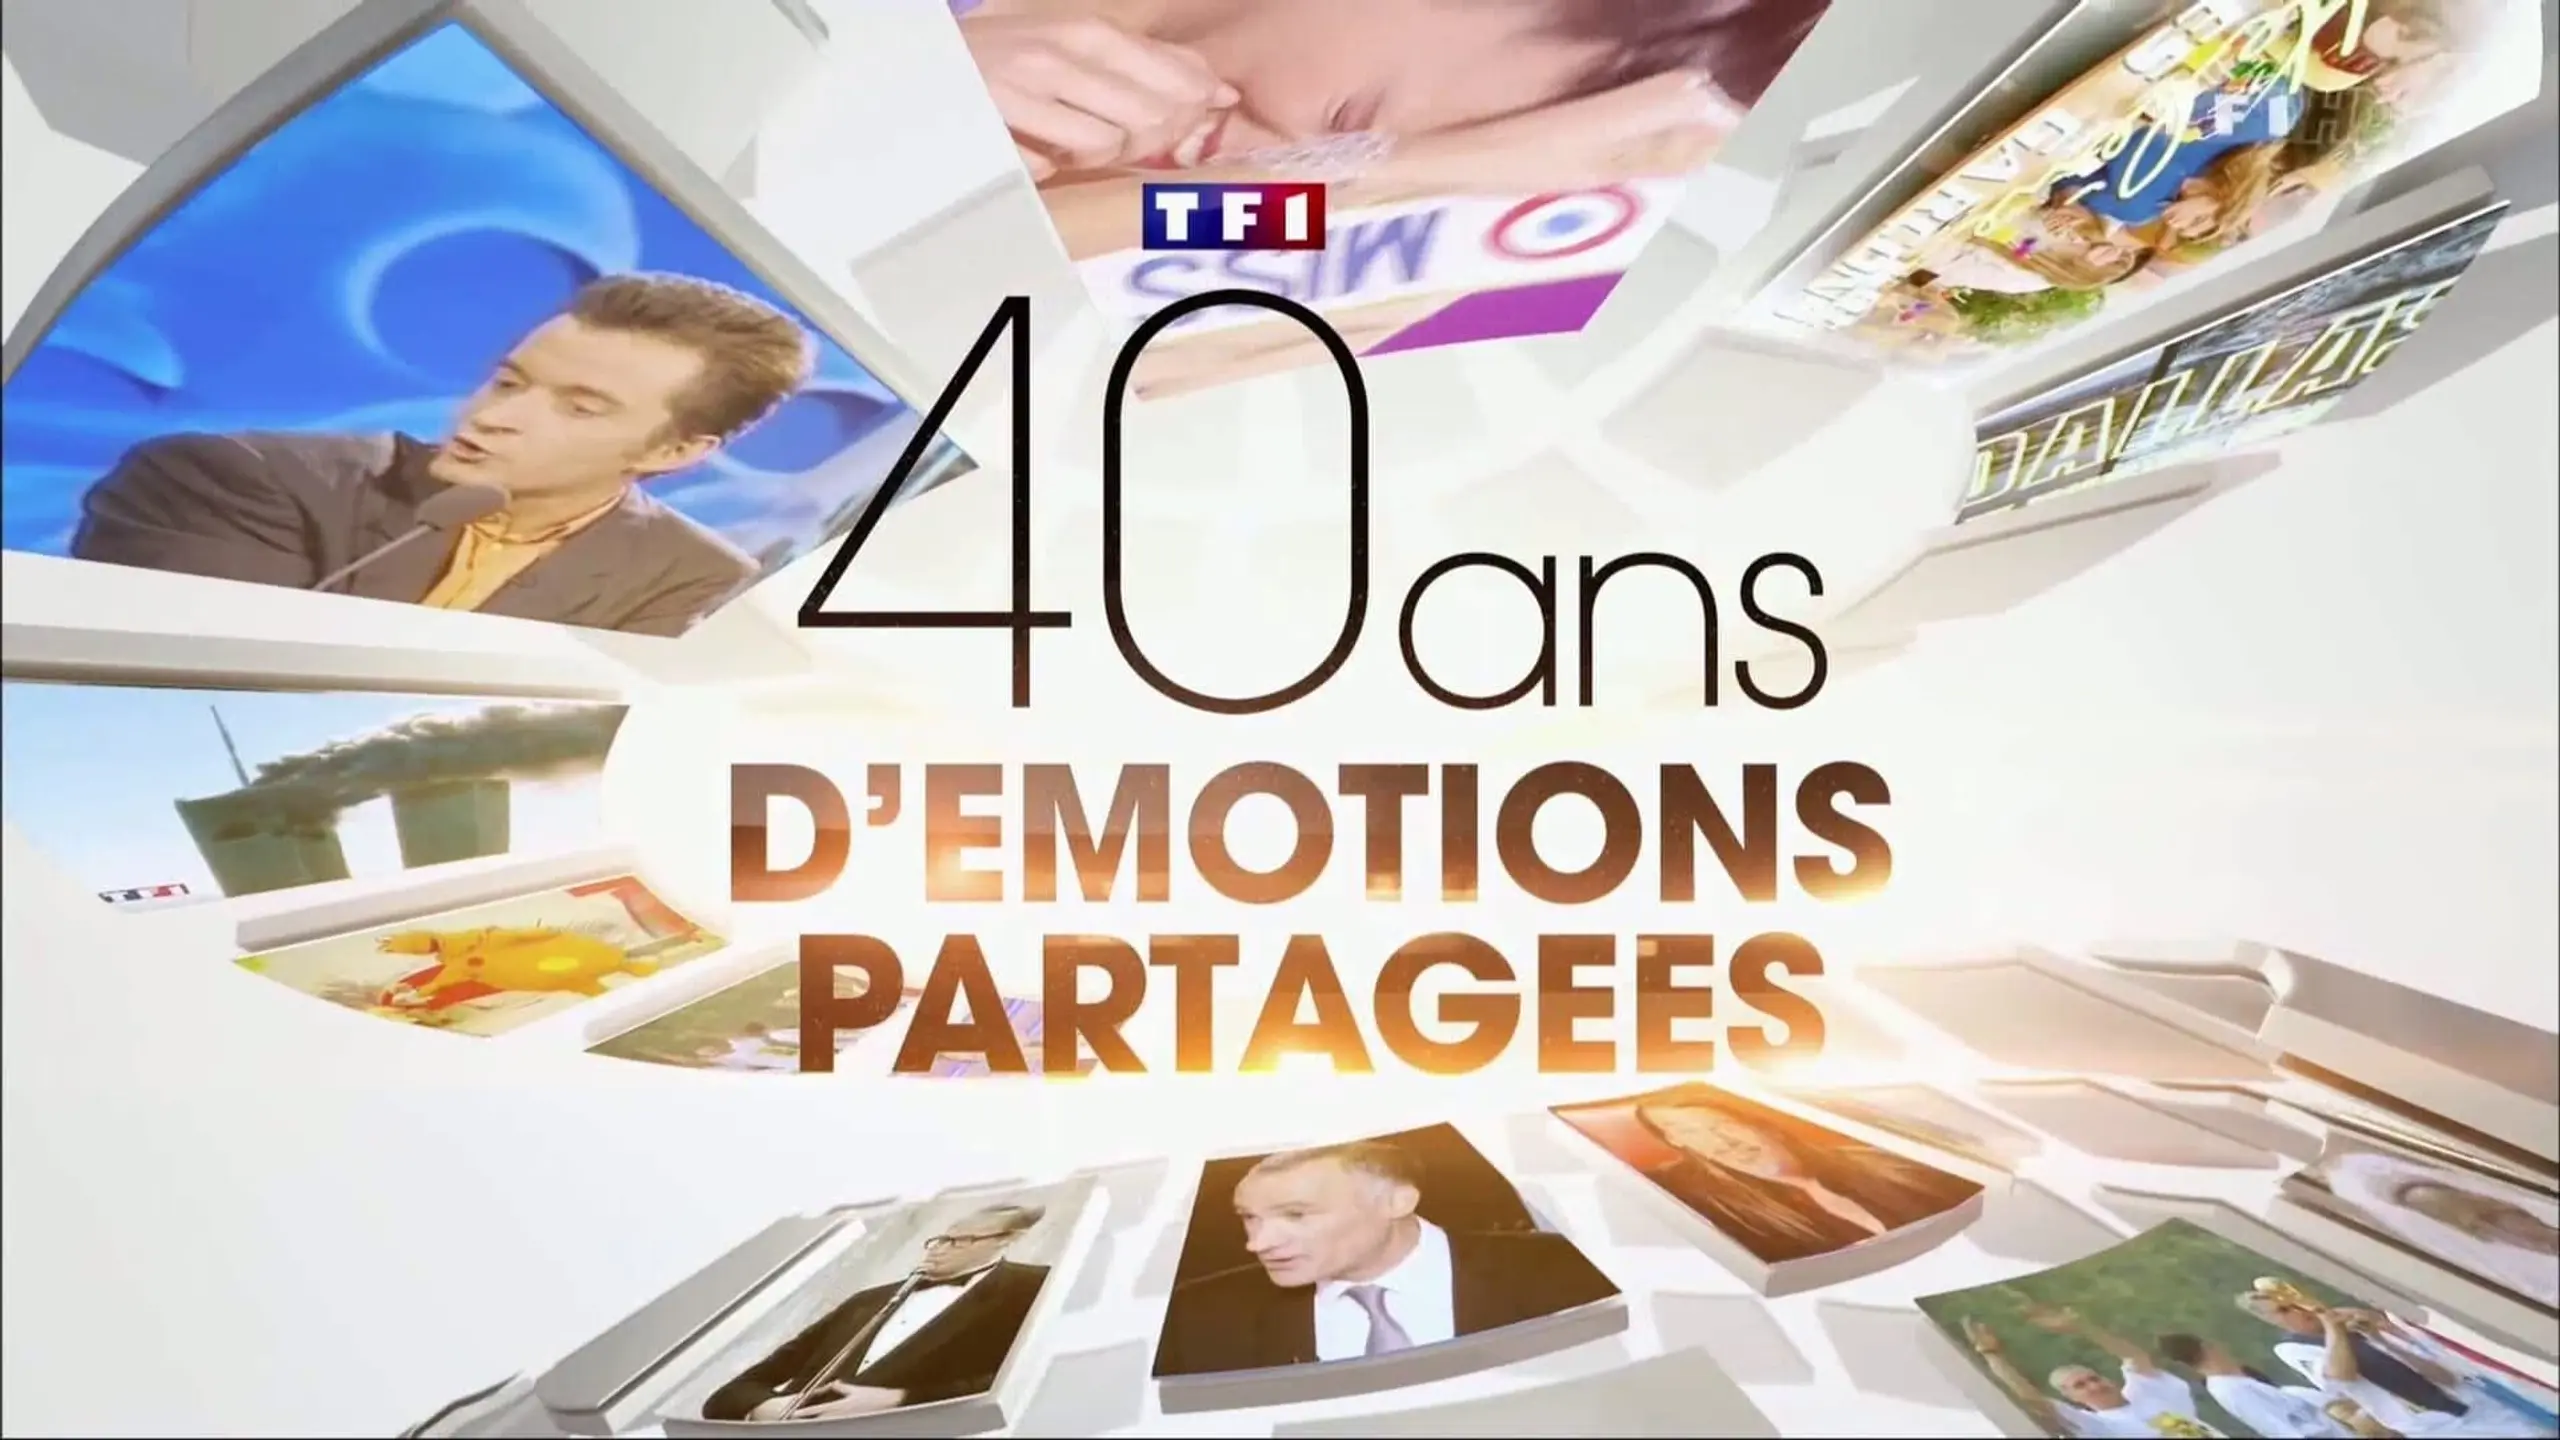 TF1 40 ans d'émotions partagées